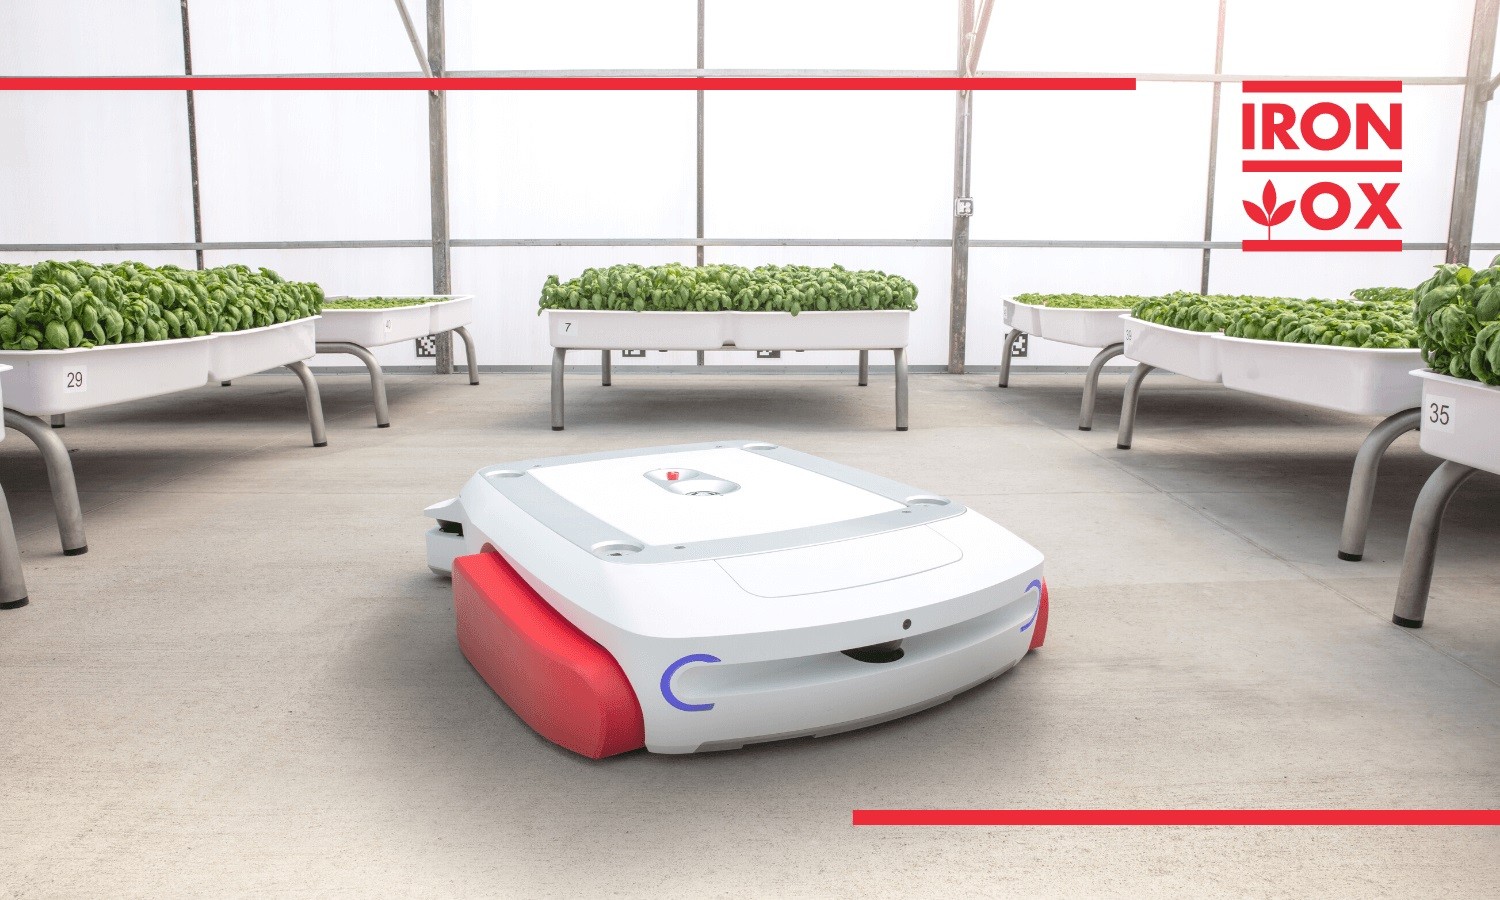 Autonomous Farming Robot Wants To Revolutionize Sustainable Agriculture